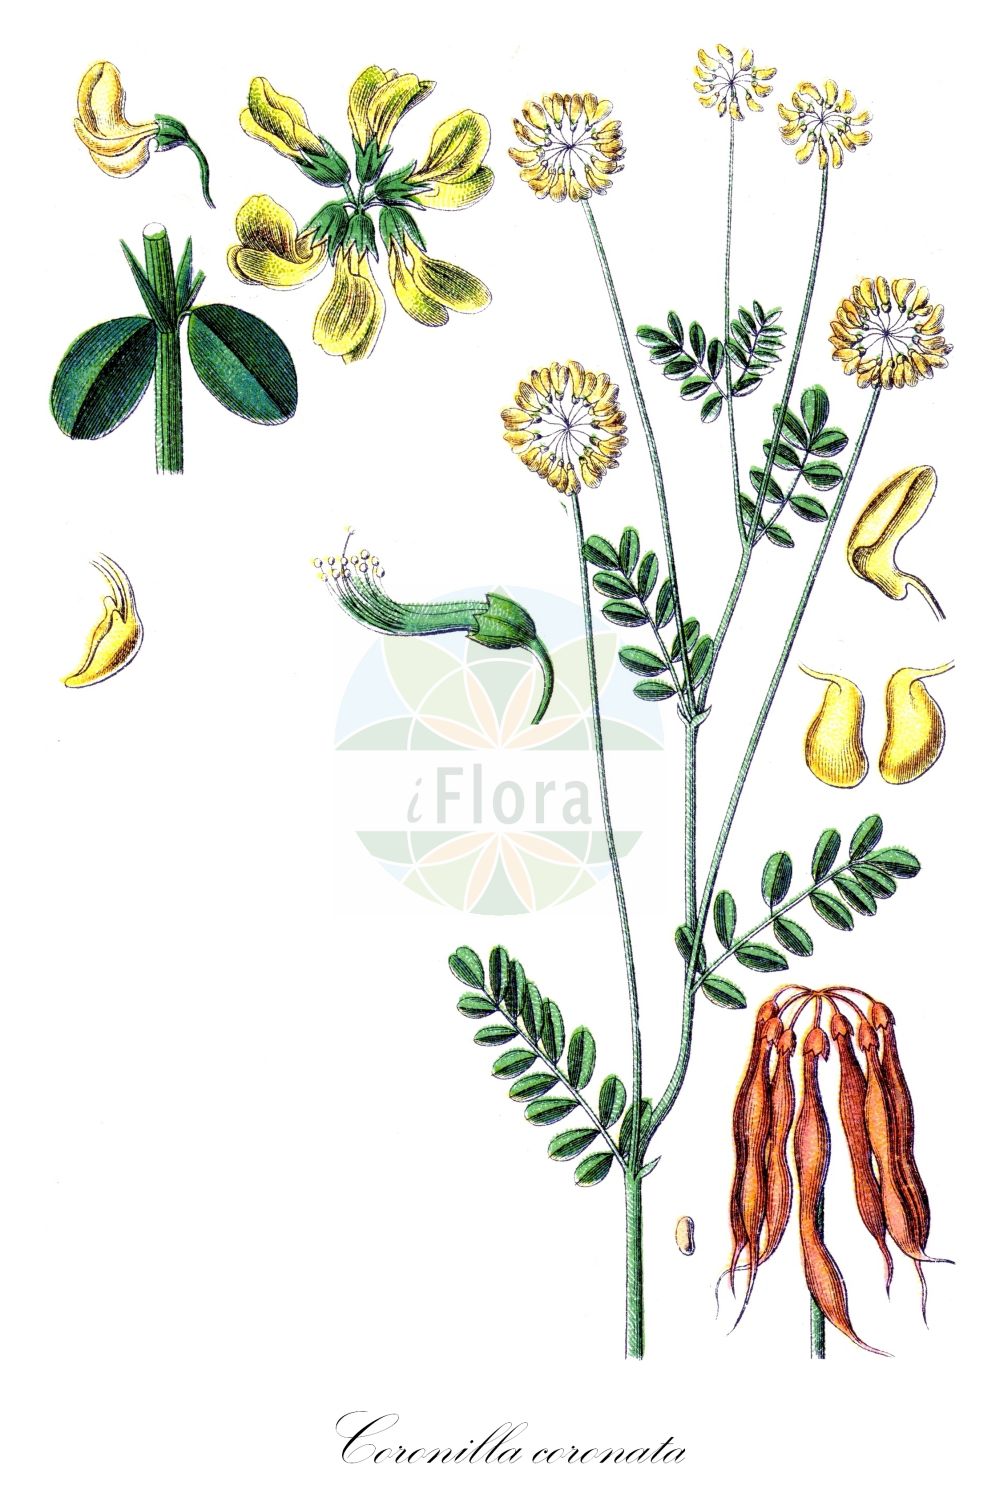 Historische Abbildung von Coronilla coronata (Berg-Kronwicke - Scorpion-vetch). Das Bild zeigt Blatt, Bluete, Frucht und Same. ---- Historical Drawing of Coronilla coronata (Berg-Kronwicke - Scorpion-vetch). The image is showing leaf, flower, fruit and seed.(Coronilla coronata,Berg-Kronwicke,Scorpion-vetch,Coronilla coronata,Coronilla montana,Berg-Kronwicke,Scorpion-vetch,Mountain Coronilla,Coronilla,Kronwicke,Crown Vetch,Fabaceae,Schmetterlingsblütler,Pea family,Blatt,Bluete,Frucht,Same,leaf,flower,fruit,seed,Sturm (1796f))